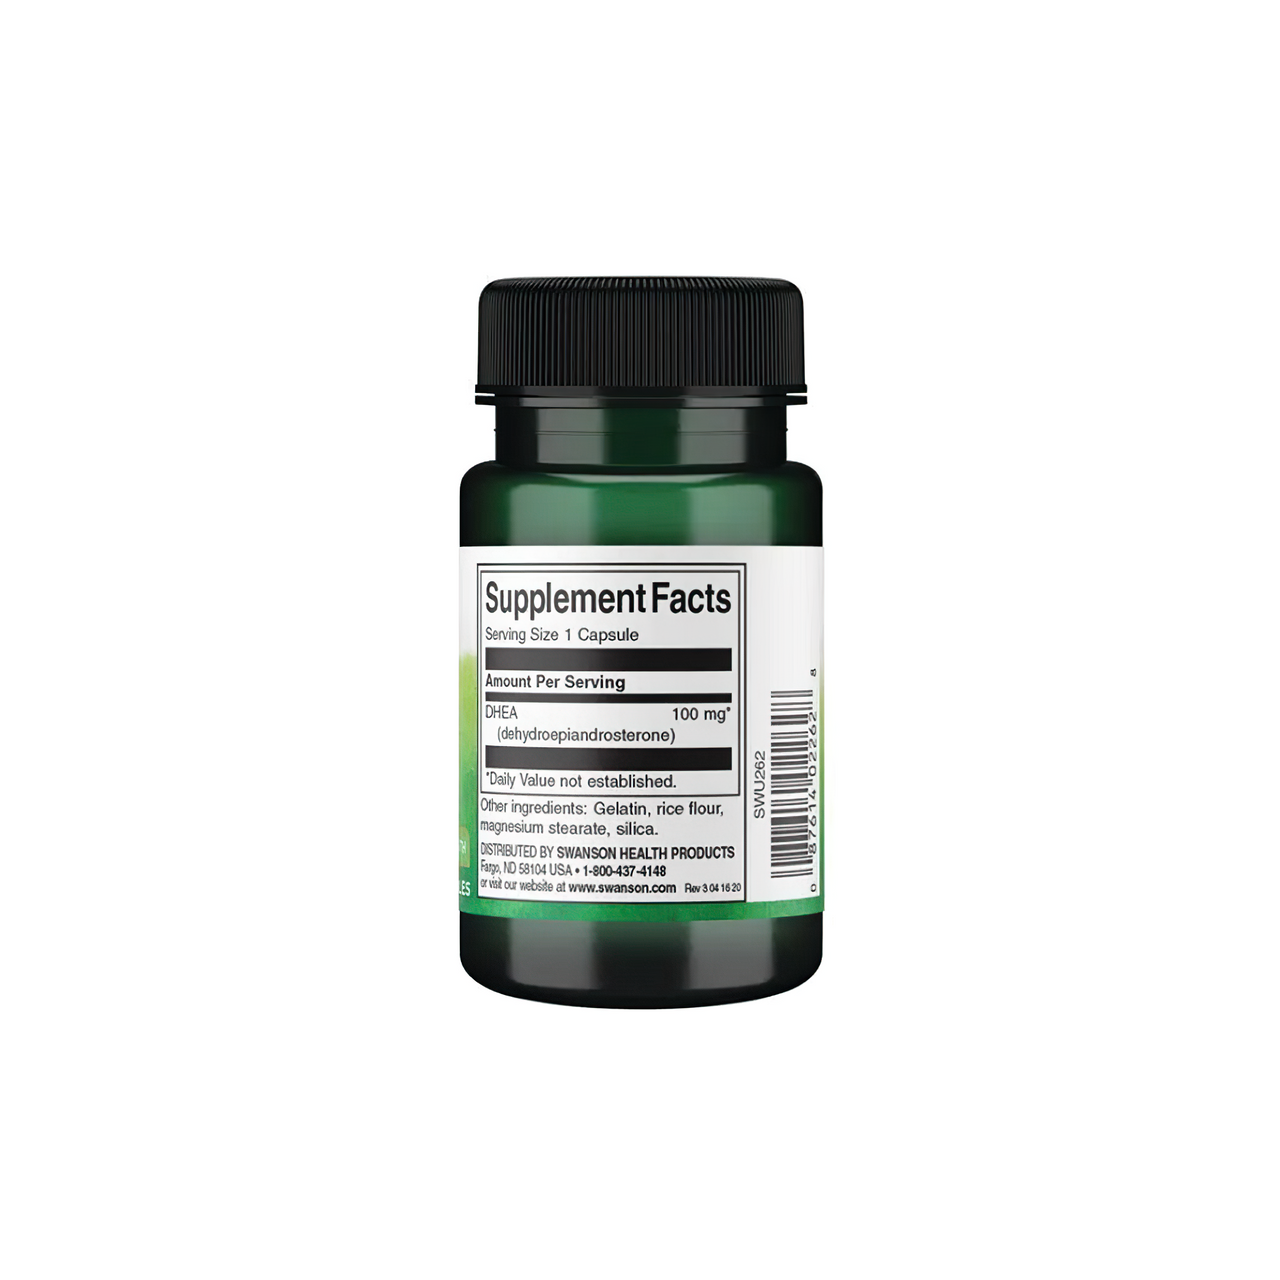 Flacone di Swanson DHEA - 100 mg 60 capsule su sfondo bianco.